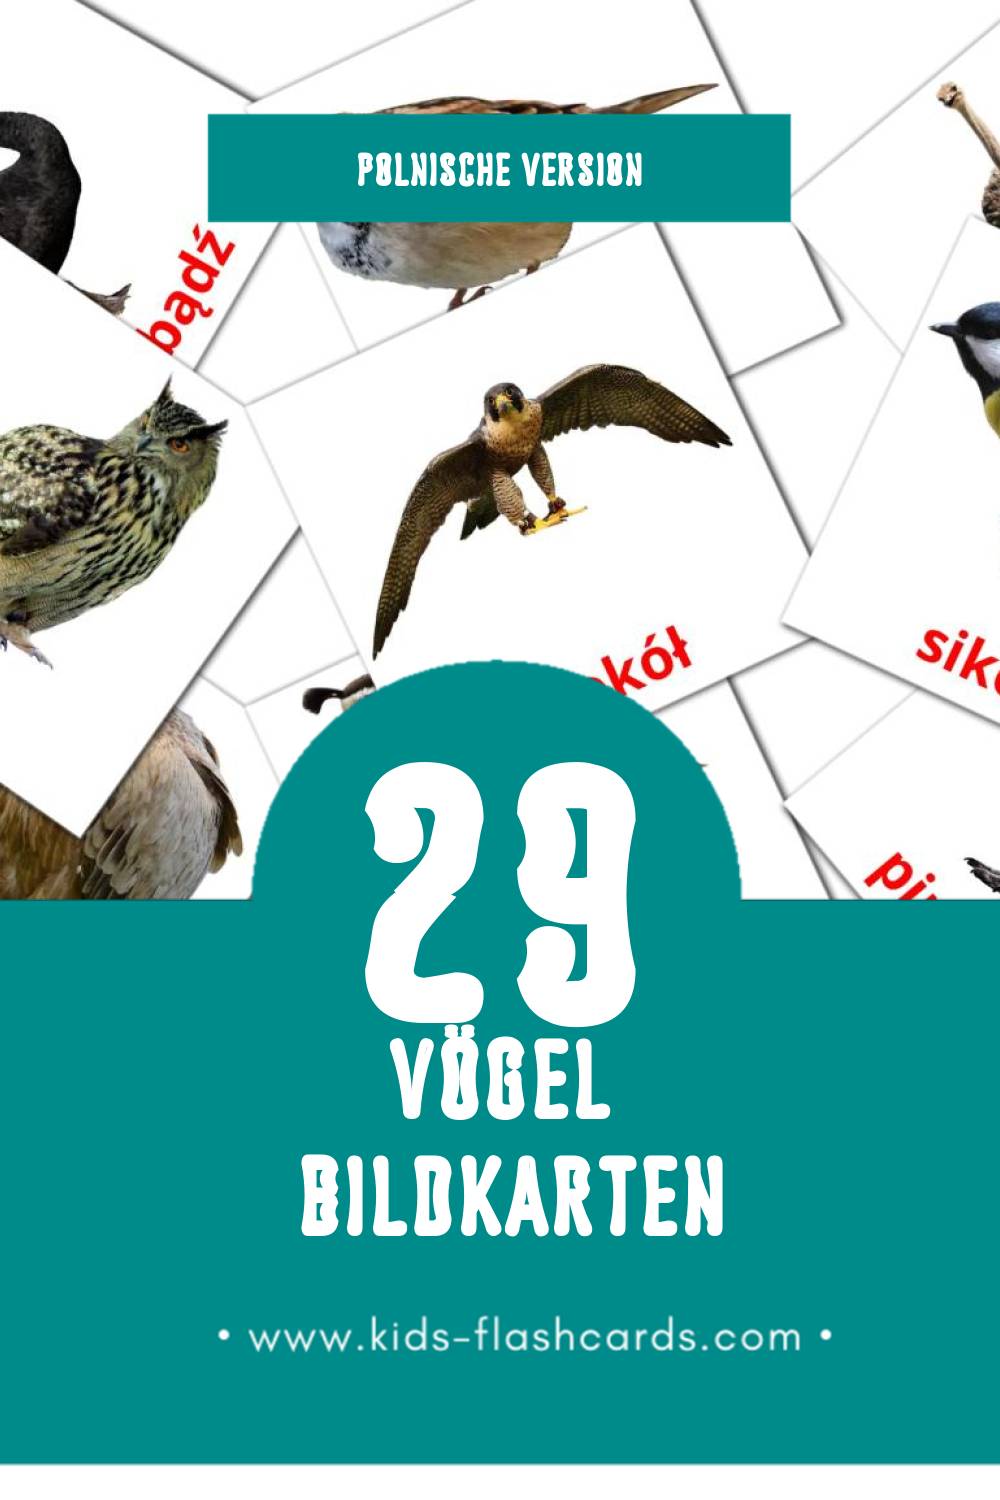 Visual Ptaki Flashcards für Kleinkinder (29 Karten in Polnisch)